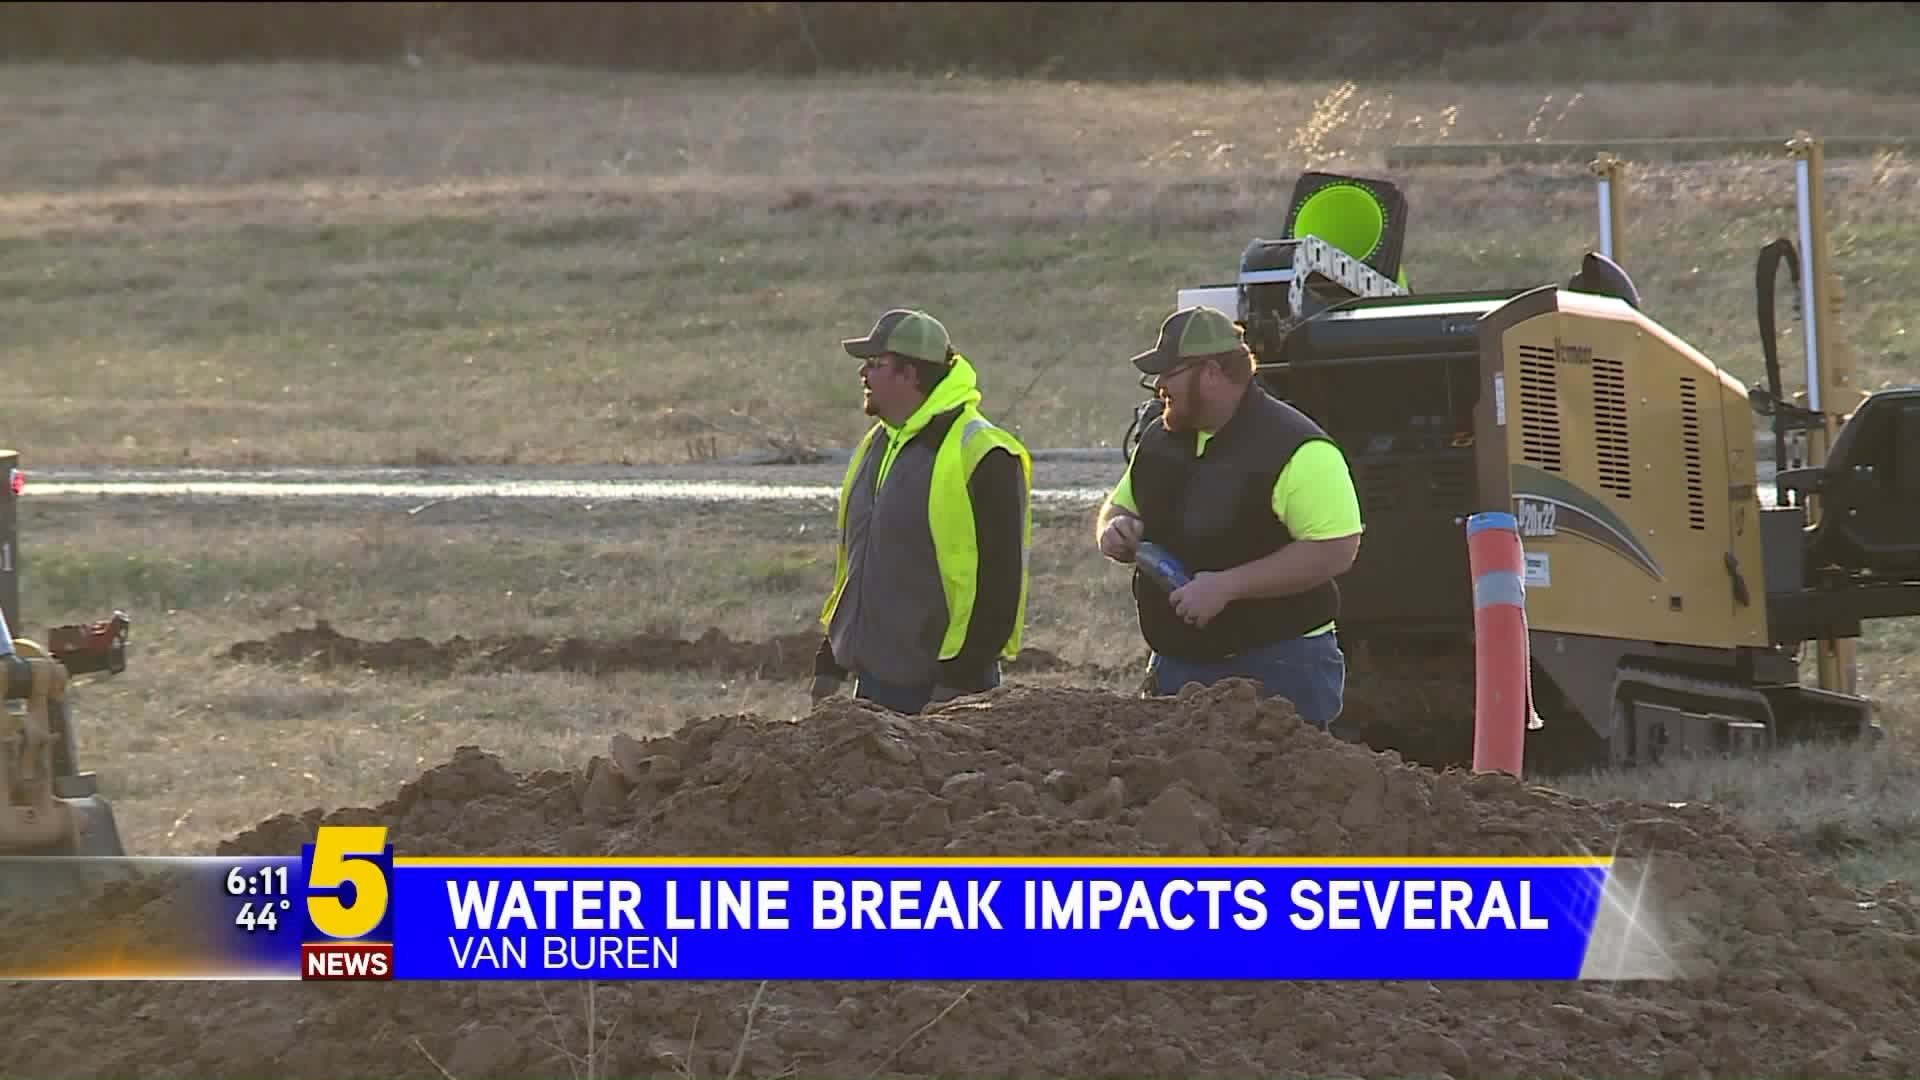 Water Line Break Impacts Several People In Van Buren